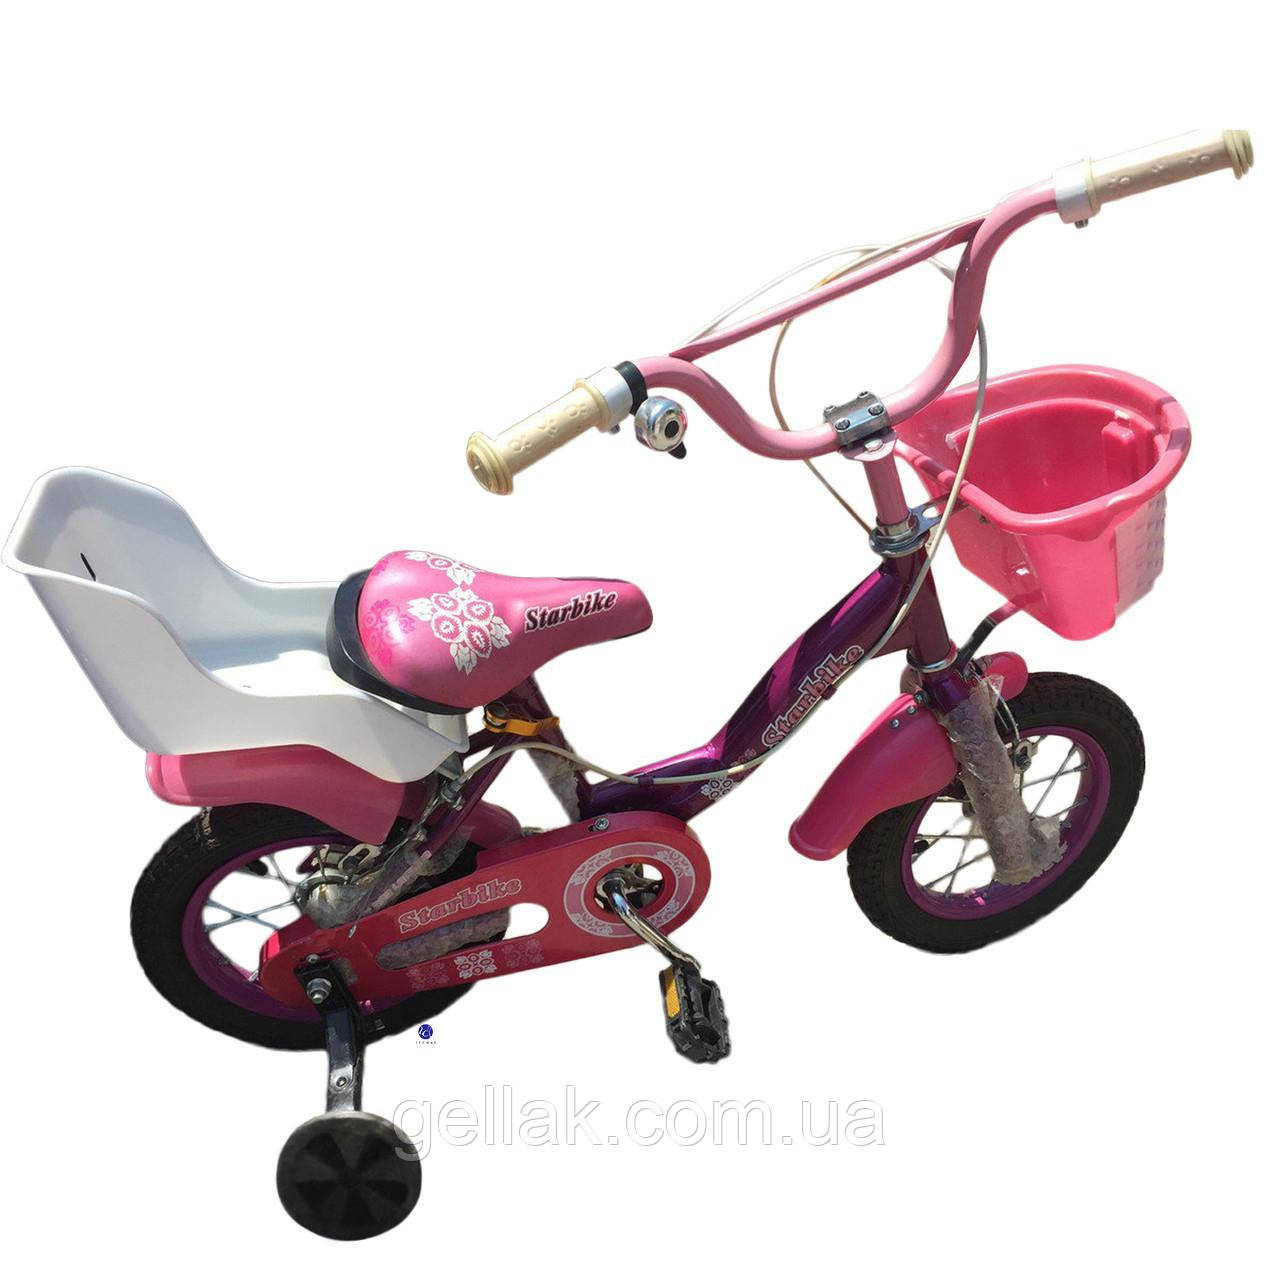 Дитячий велосипед Starbike (12 дюймів)